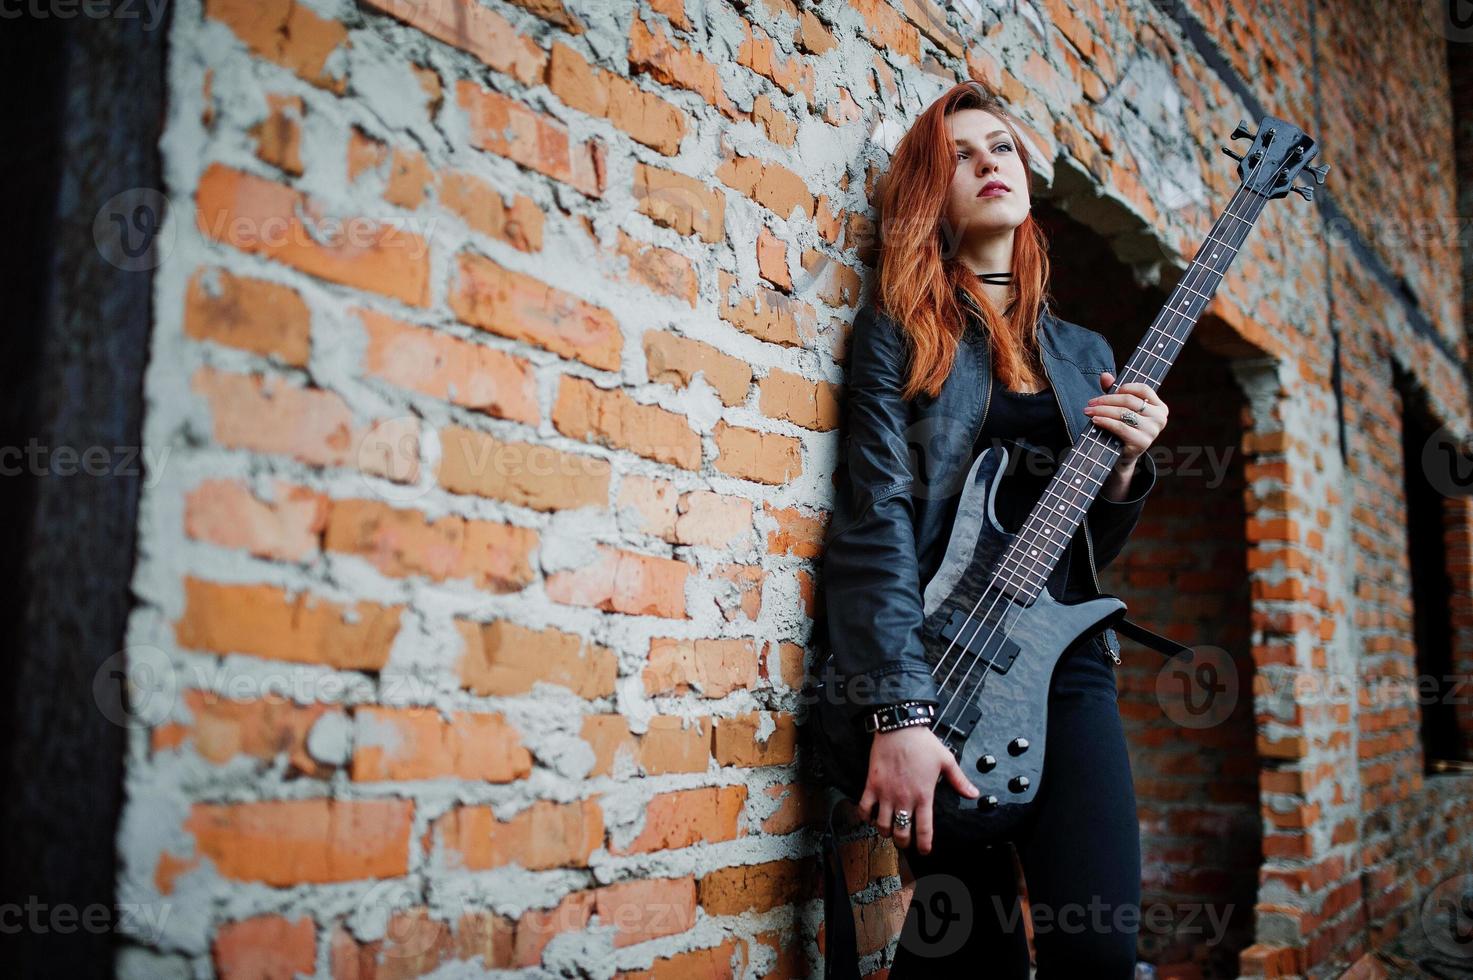 Rothaarige Punkmädchen tragen auf Schwarz mit Bassgitarre an einem verlassenen Ort. Porträt einer gotischen Musikerin. foto